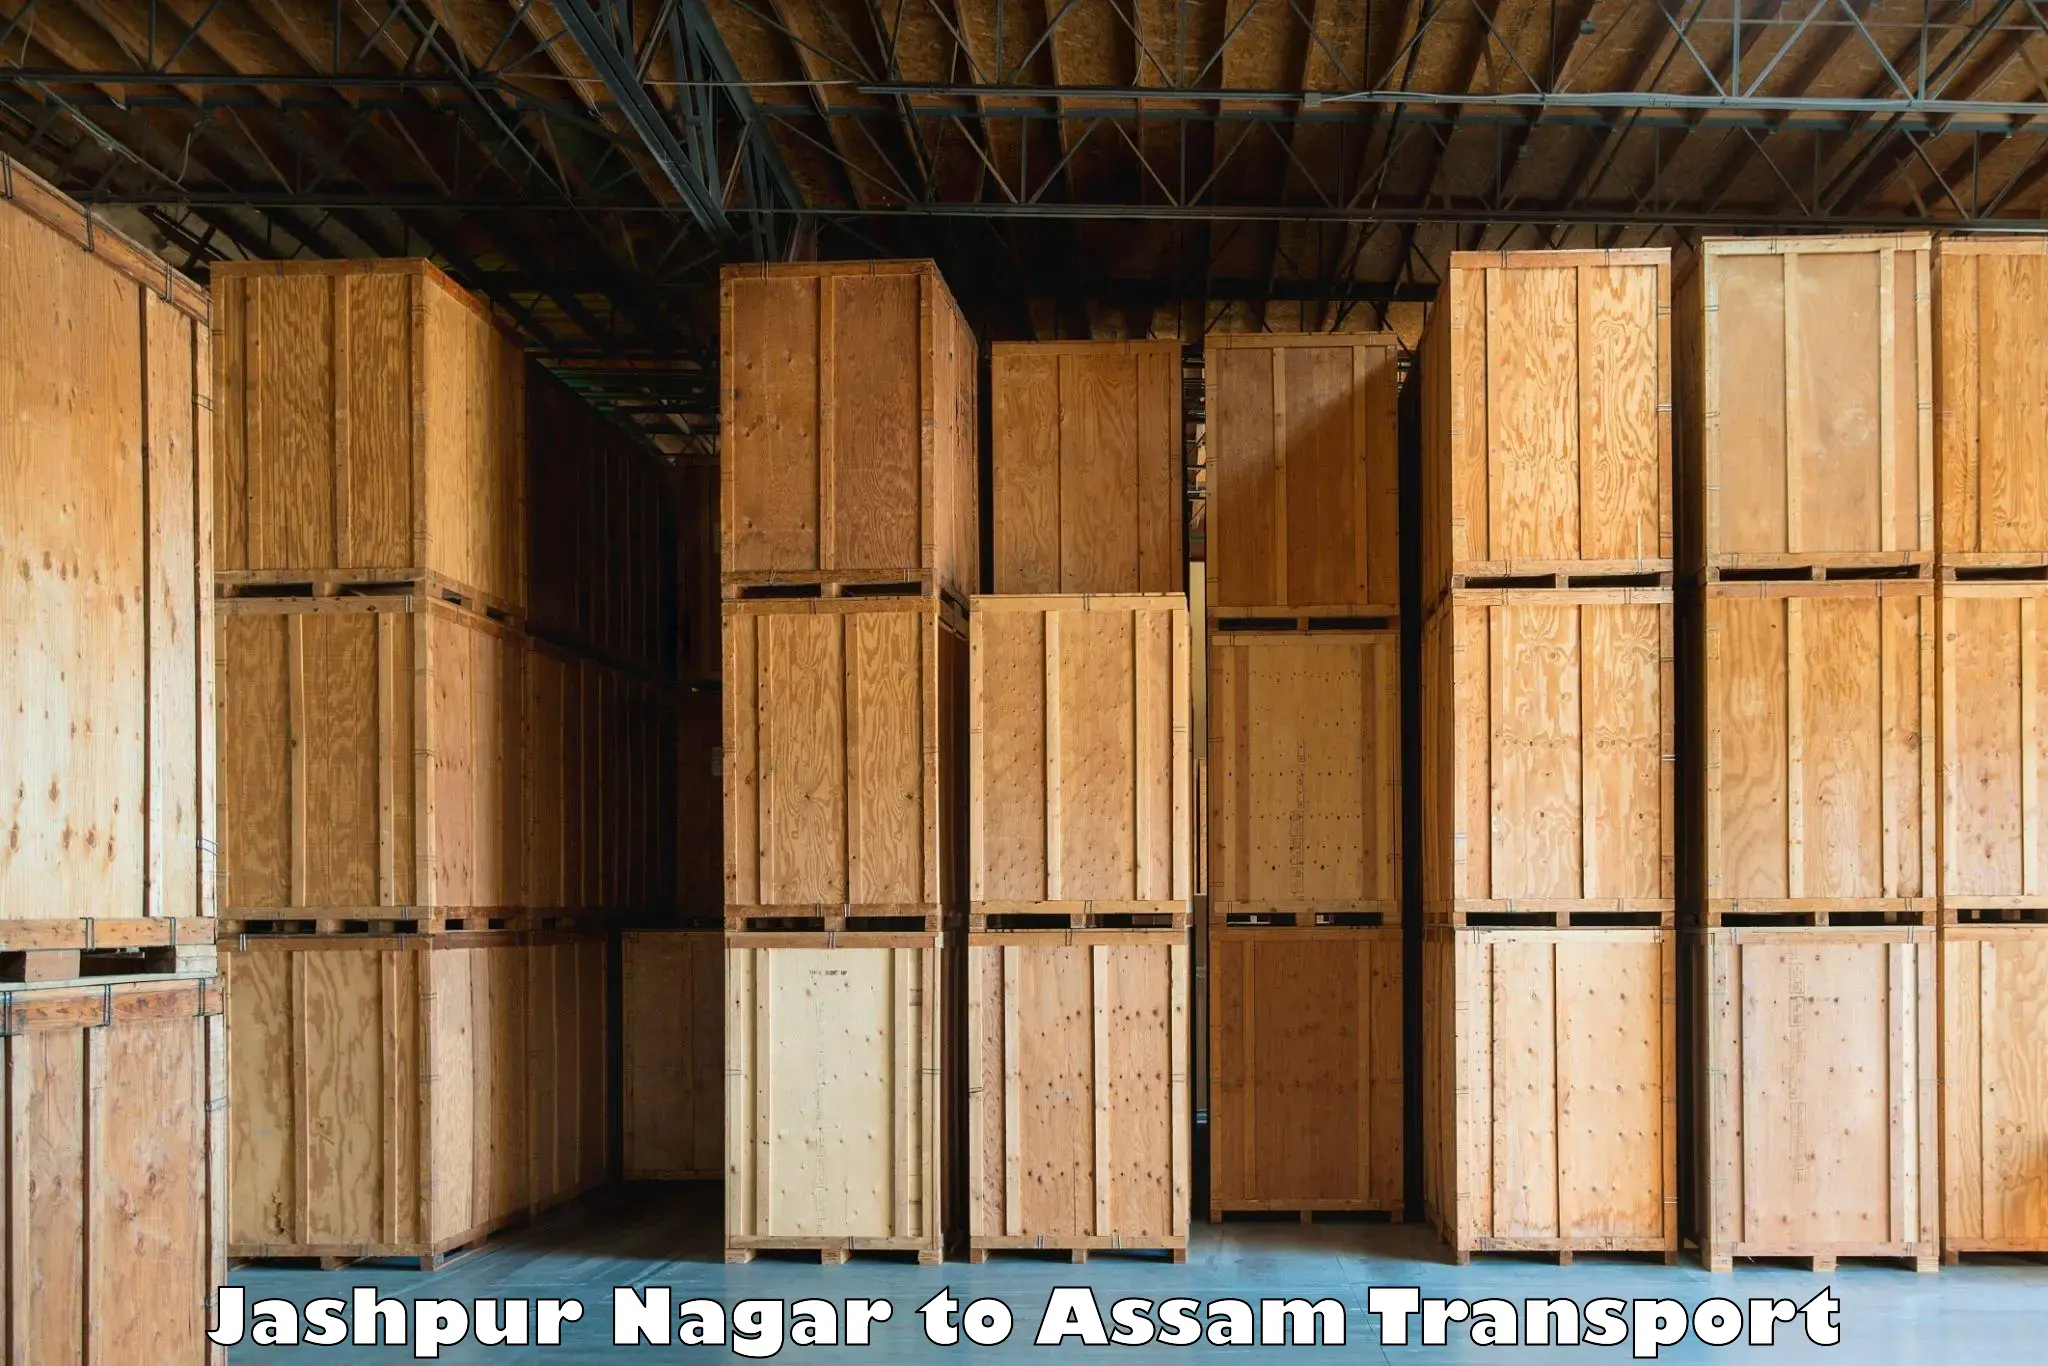 Daily transport service Jashpur Nagar to Dhakuakhana